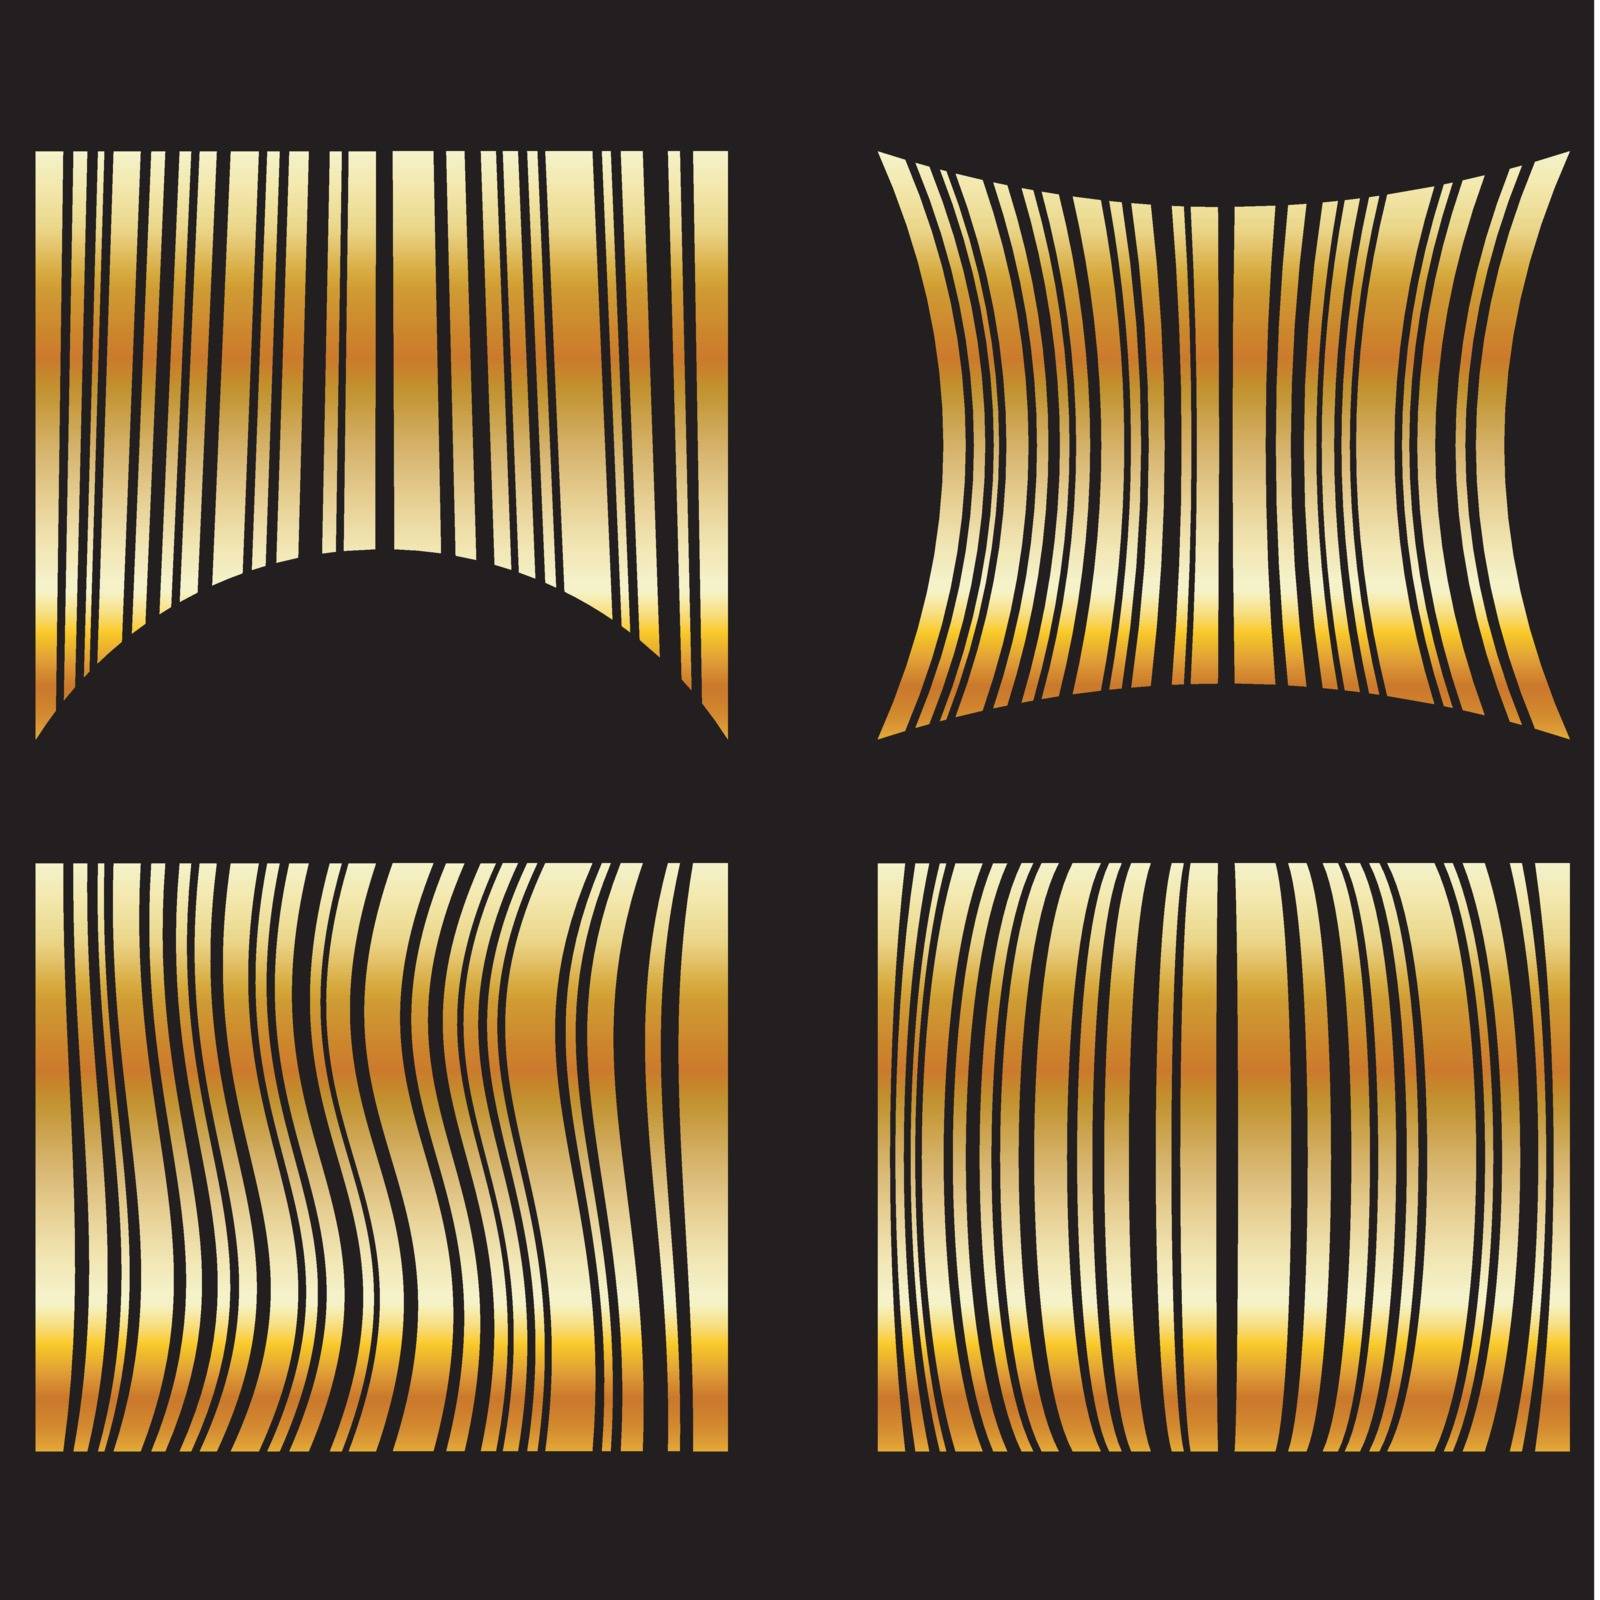 Golden barcodes by shawlinmohd